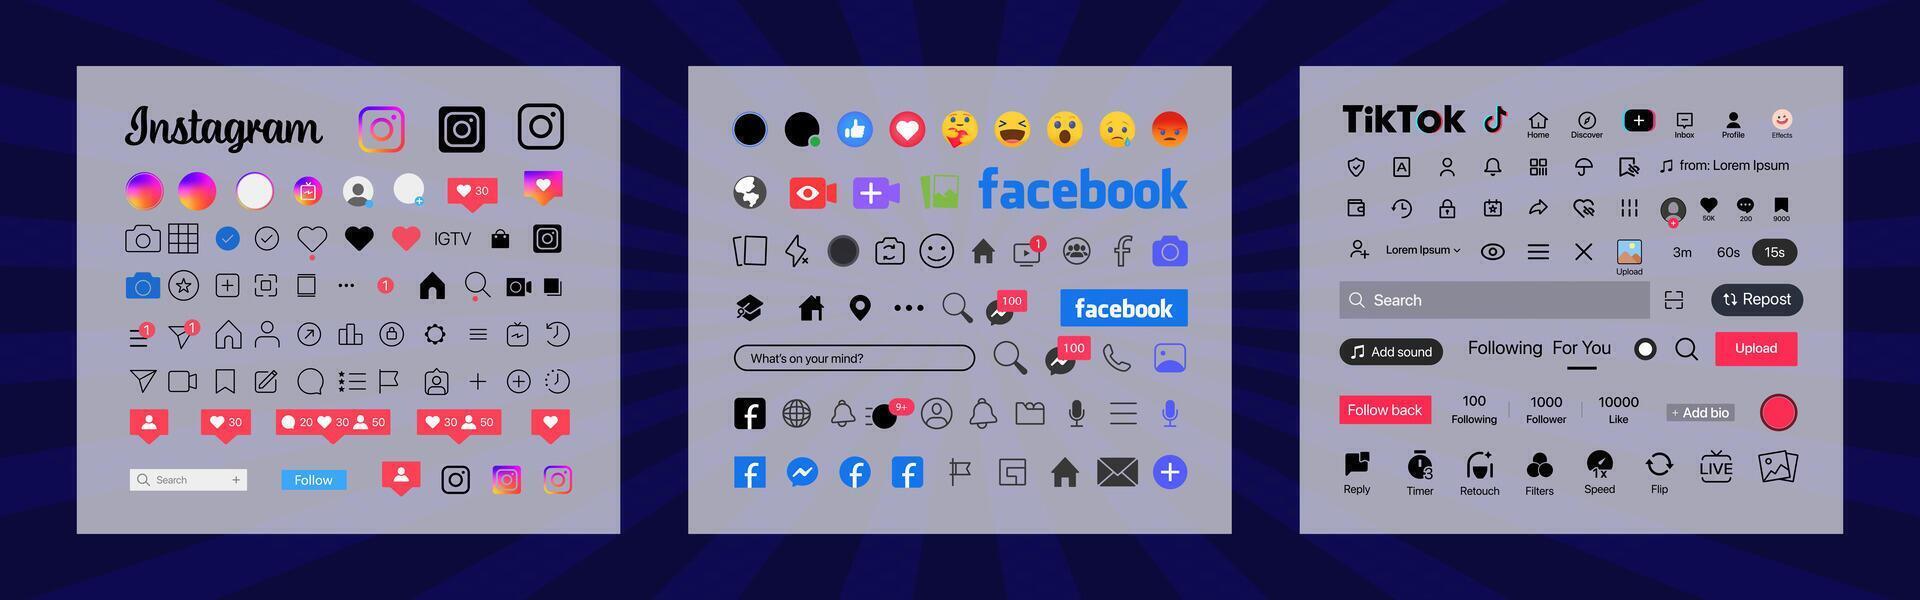 instagram, tik tok, Facebook botón icono. conjunto pantalla social medios de comunicación y social red interfaz modelo. cuentos usuario botón, símbolo, firmar logo. cuentos, apreciado, arroyo. editorial vector ilustración